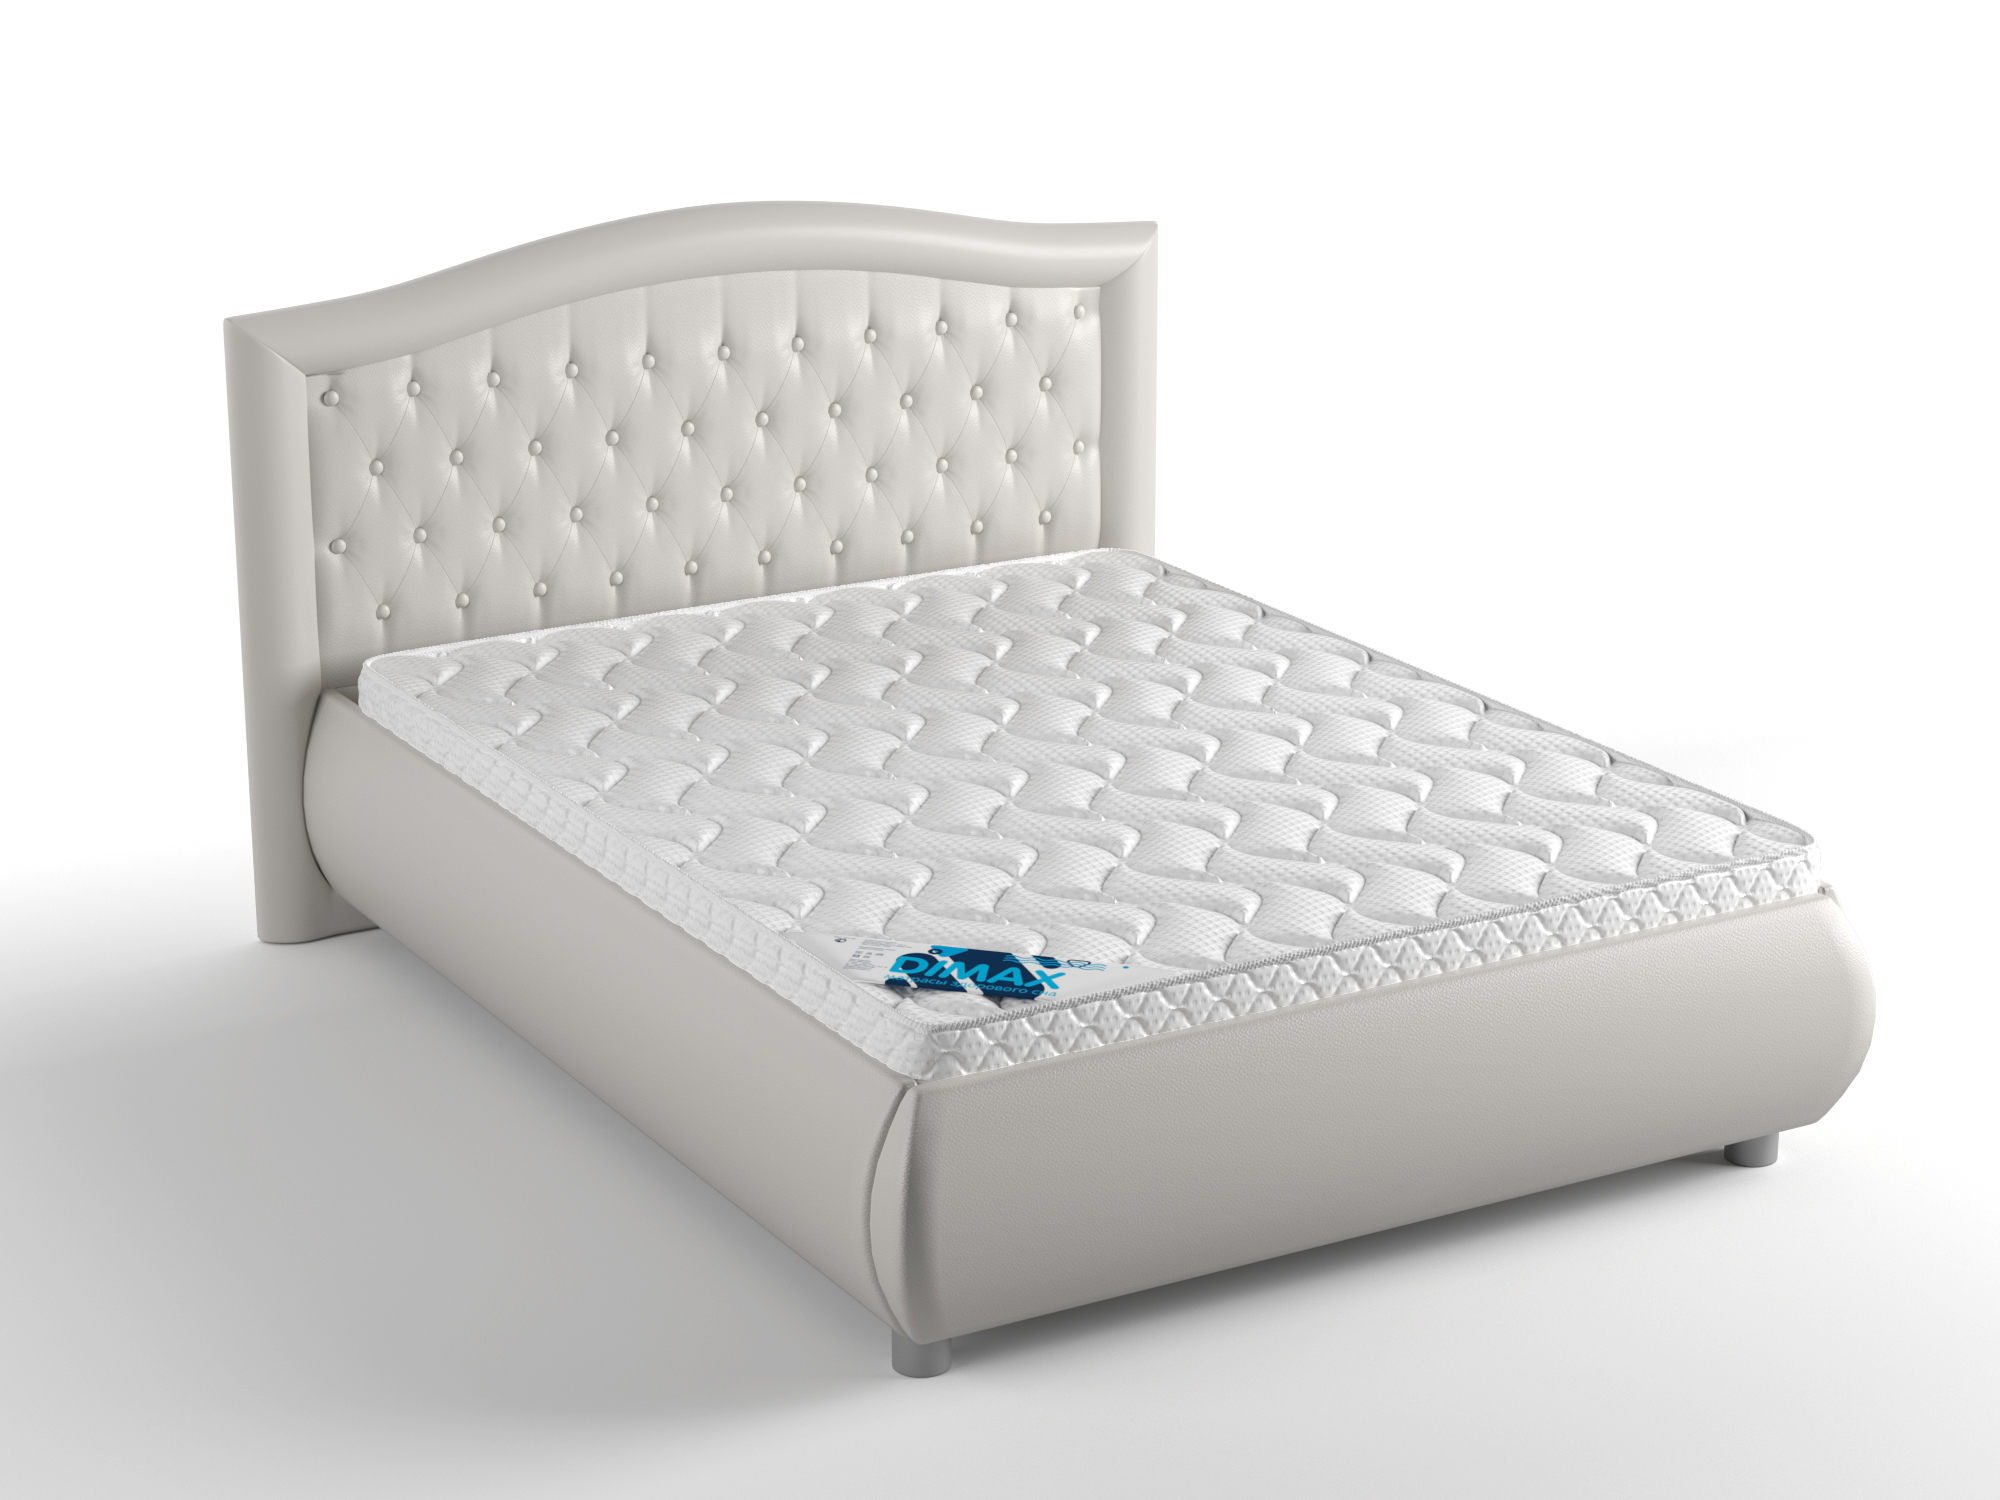 Купить кровать от производителя новосибирск. Кровать Dimax Эридан. Кровать Dimax Нордо 140х200. Кровать Dimax Испаньола. Кровать Dimax Нордо 160х200.